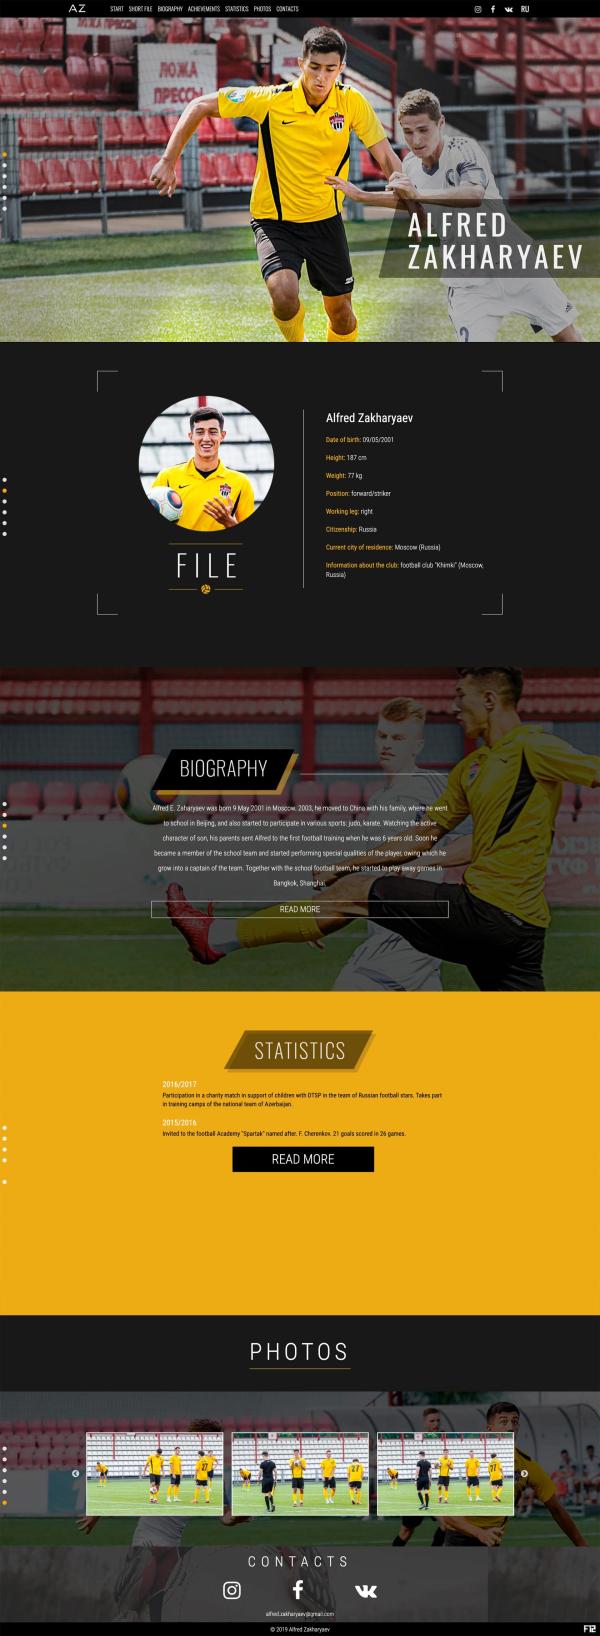 Versión regular del sitio El sitio del futbolista Zaharyaev